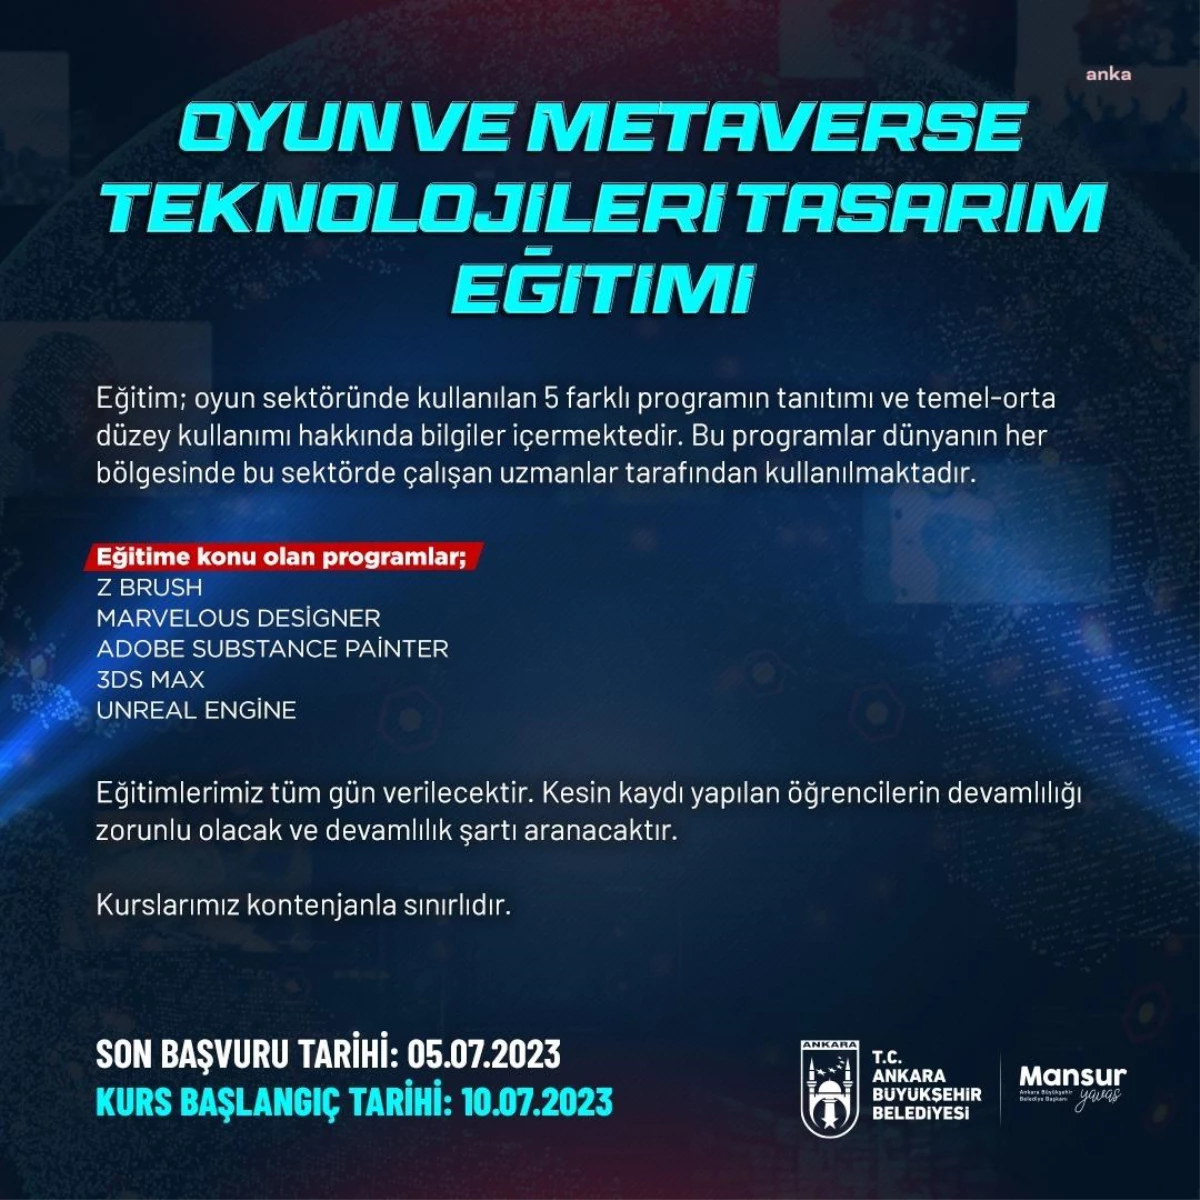 Ankara Büyükşehir Belediyesi, Oyun ve Metaverse Teknolojileri Tasarım Eğitimine Başlıyor